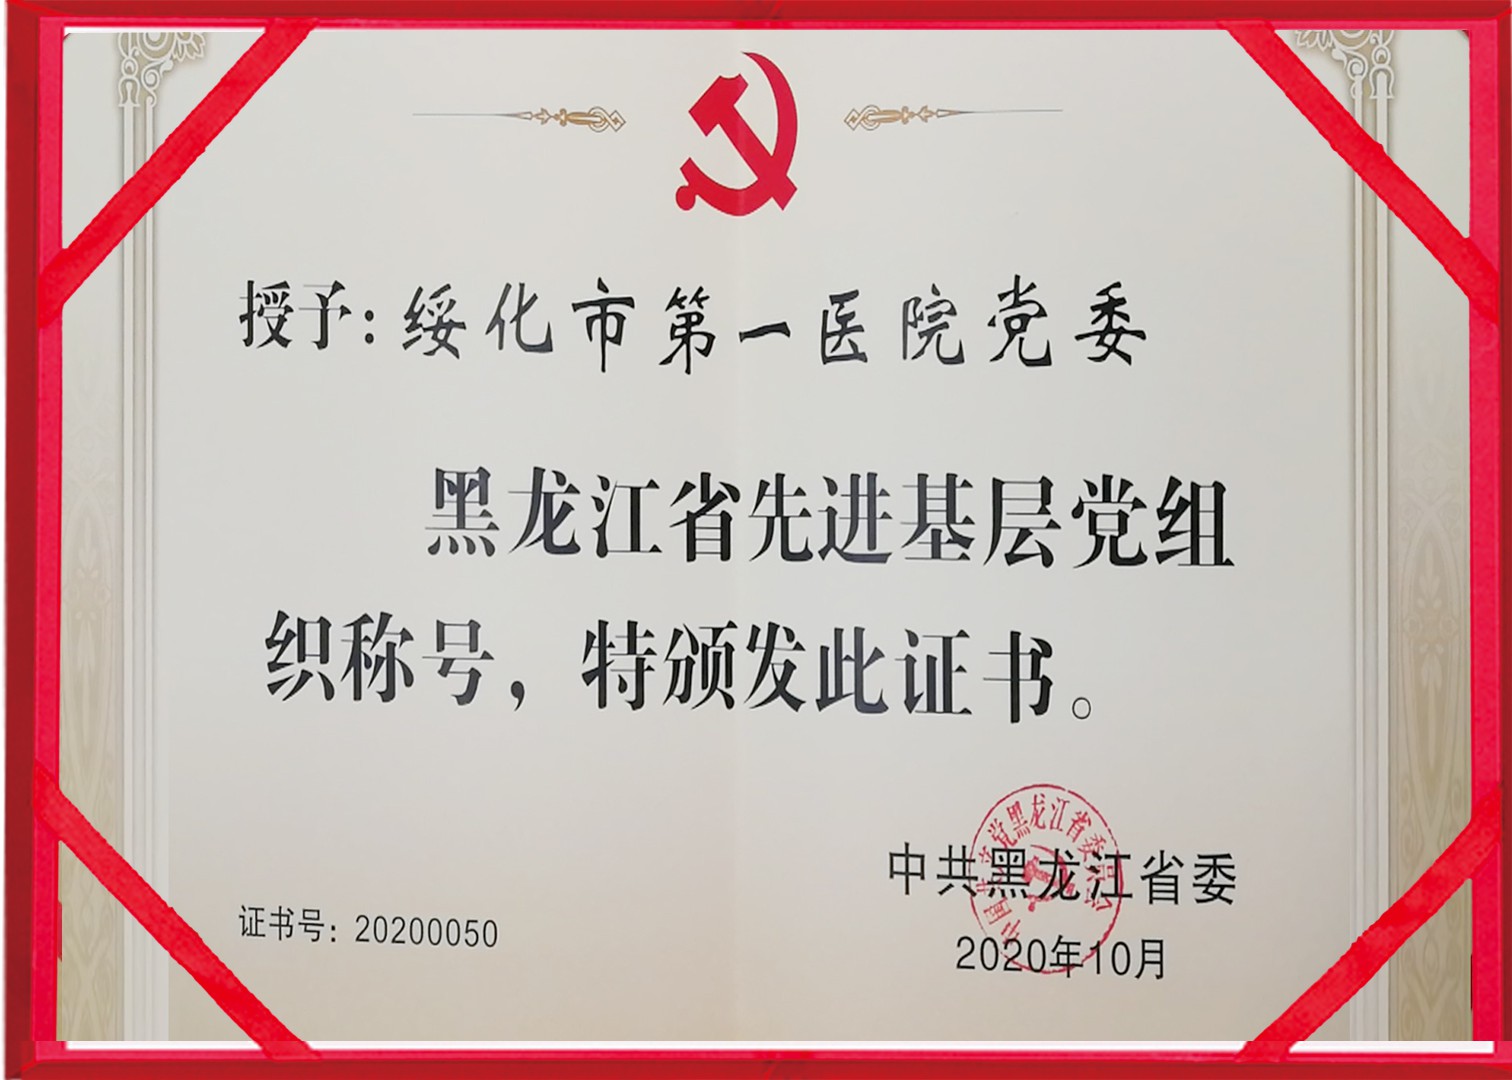 2020年10月全球网赌十大网站荣获黑龙江省先进基层党组织称号副本